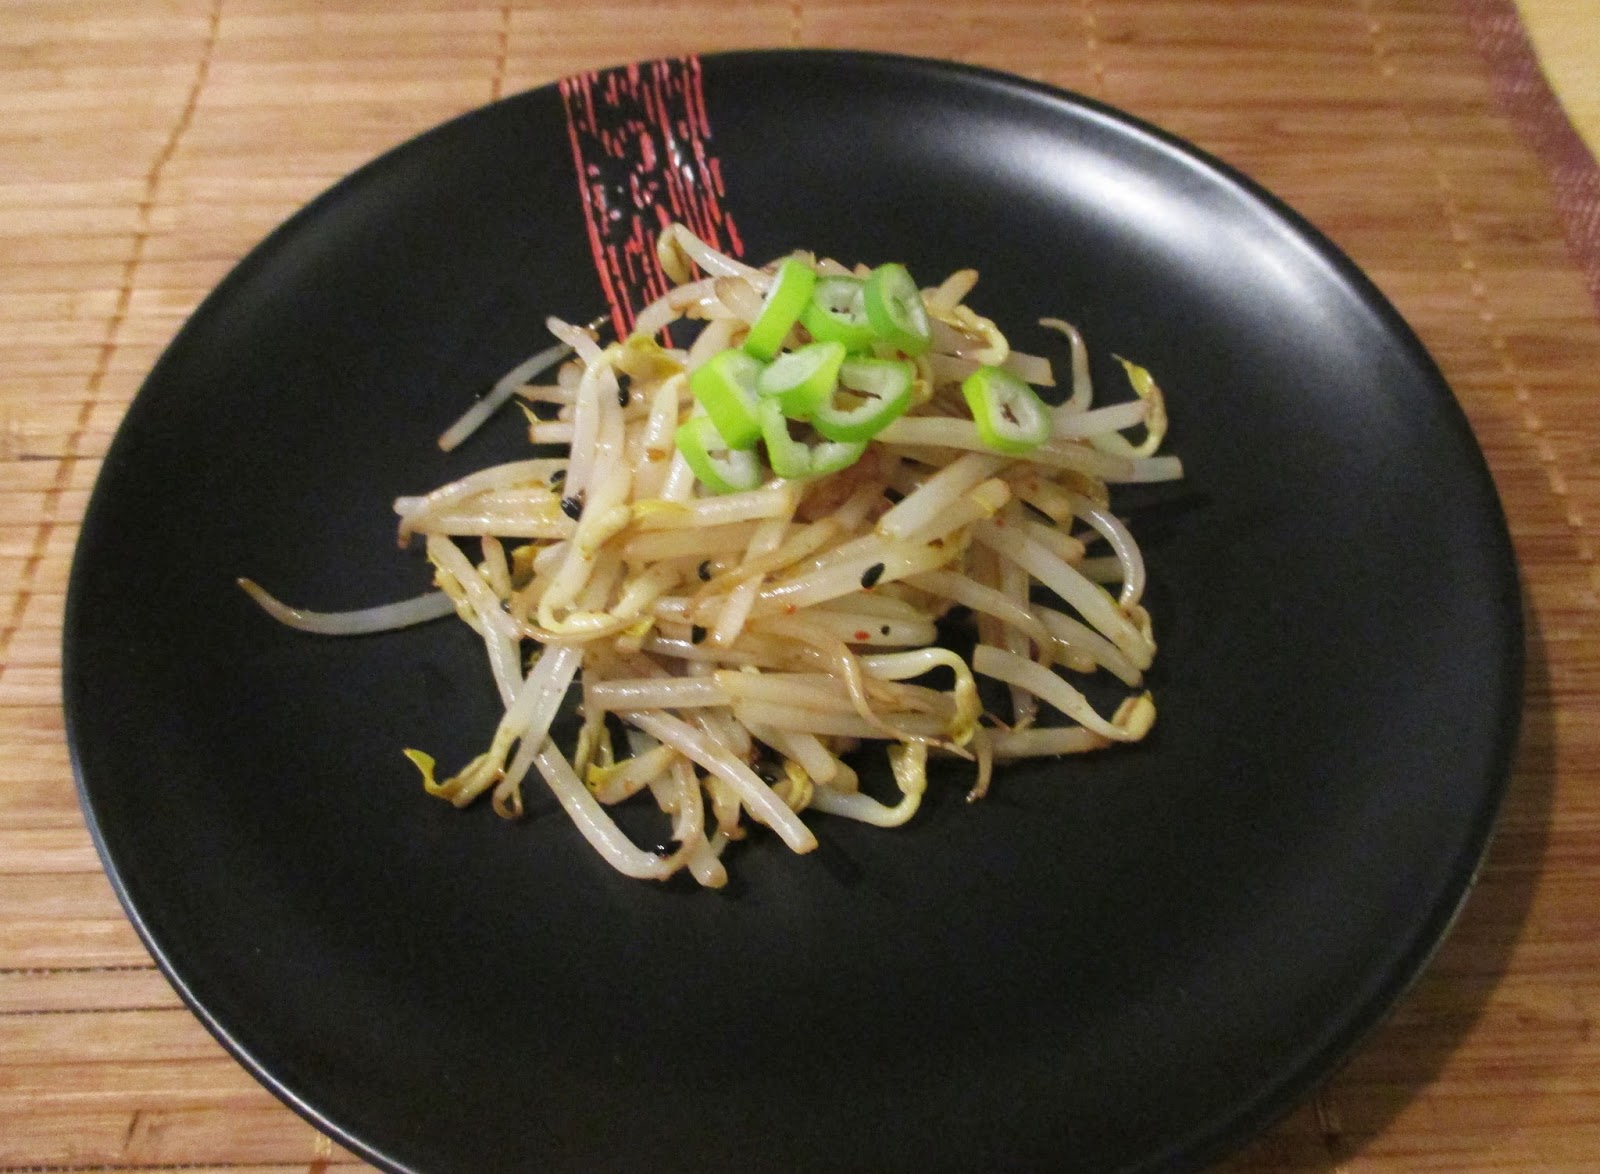 Otaku Family: Pikanter Bohnensprossen Salat